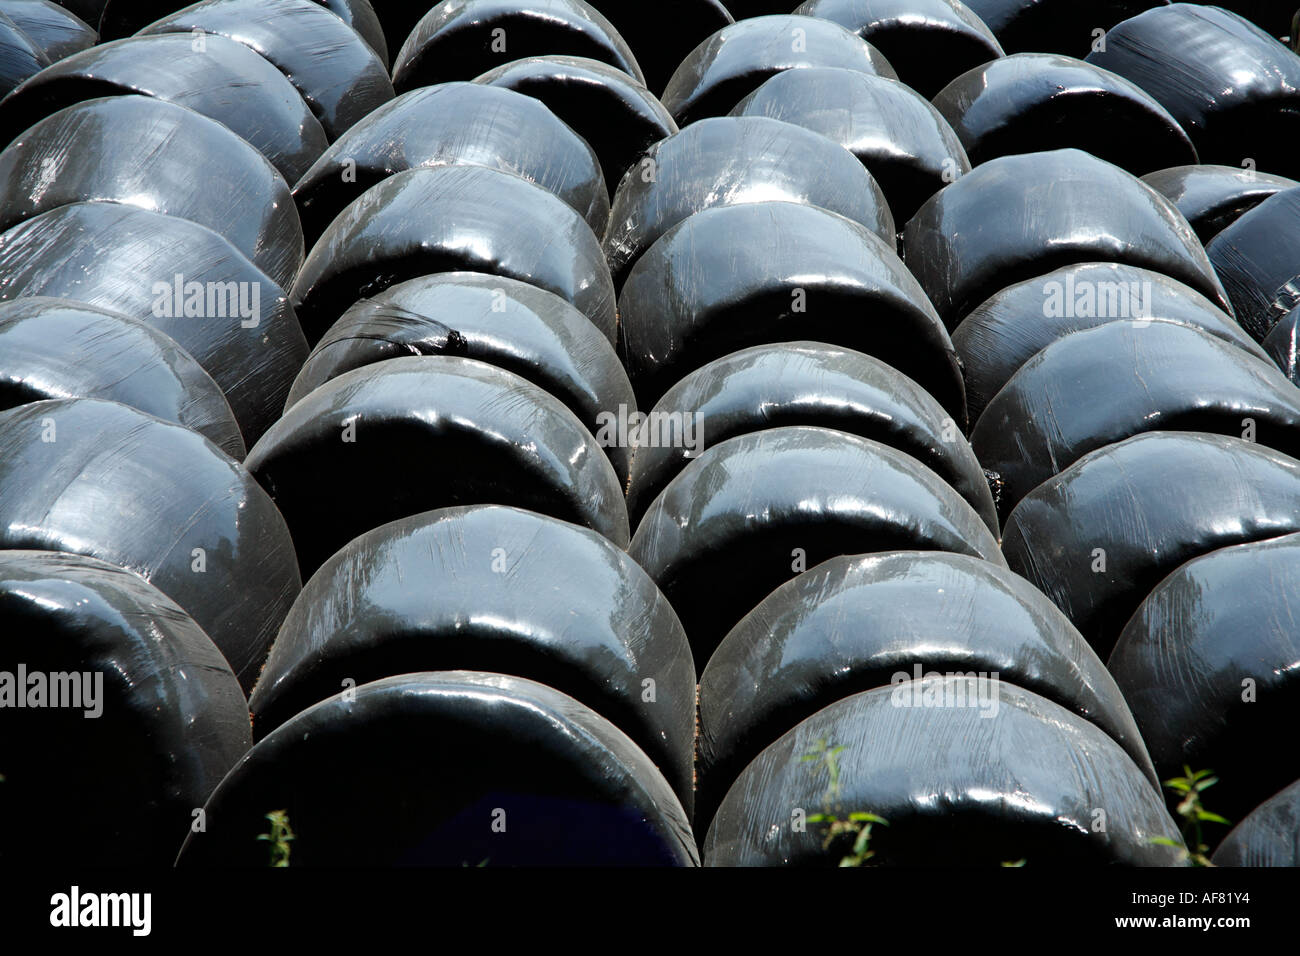 Ballots de foin dans de grands sacs en plastique noir Banque D'Images